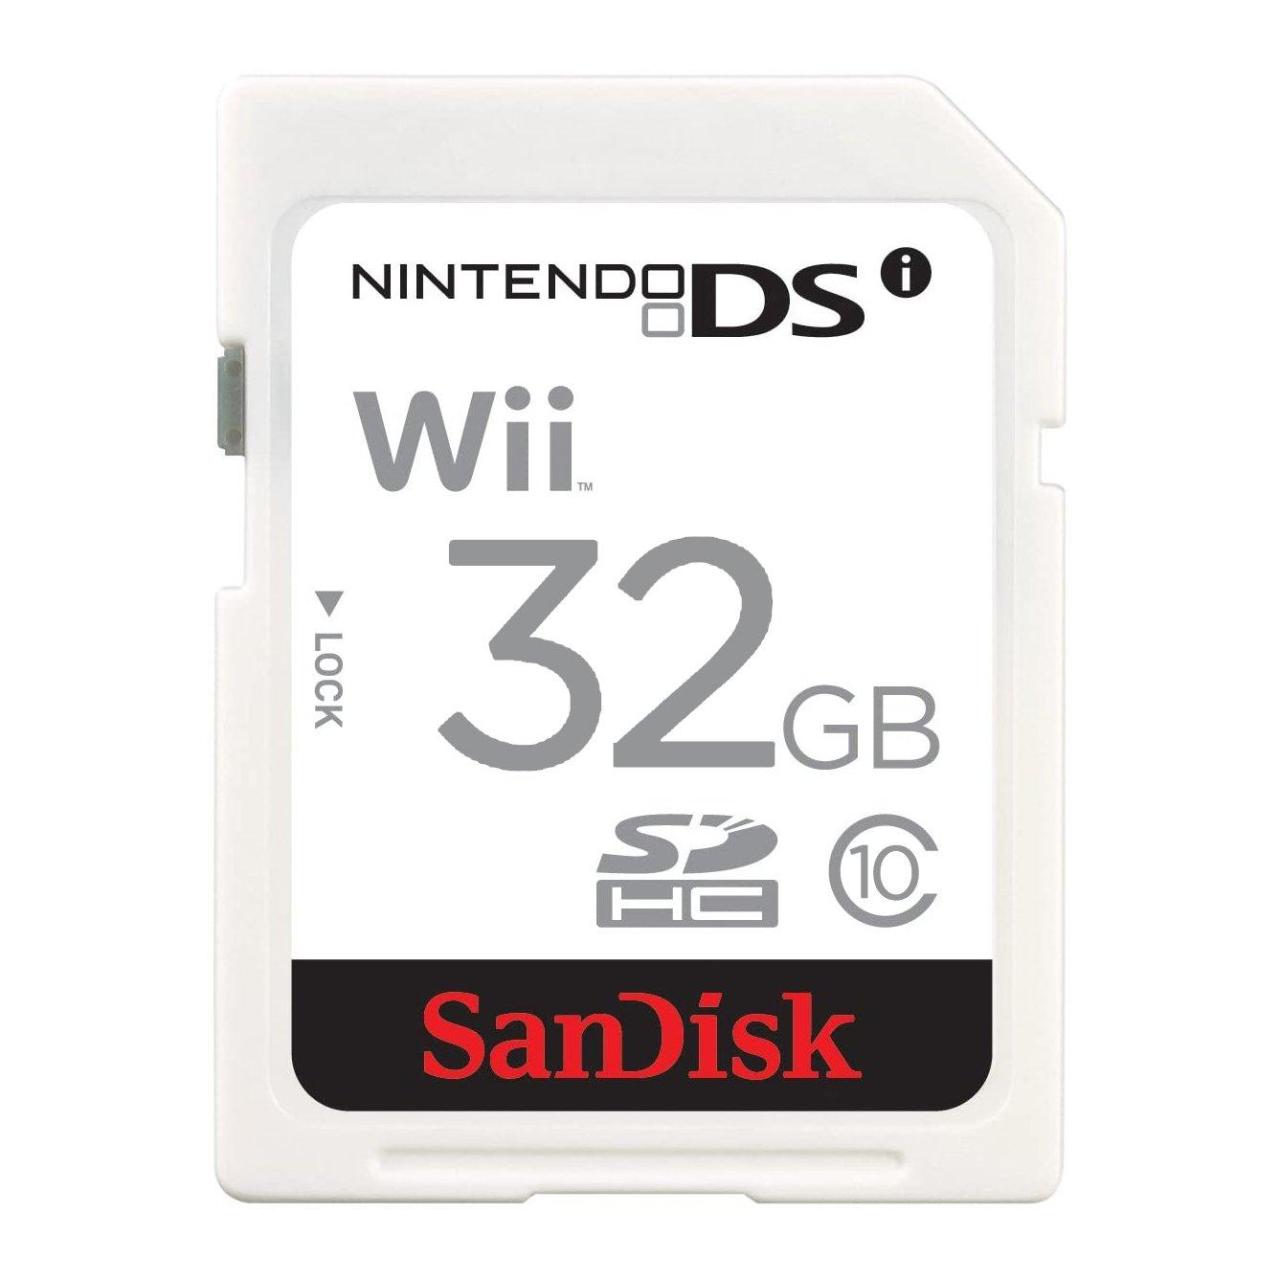 Wii u memory sd card